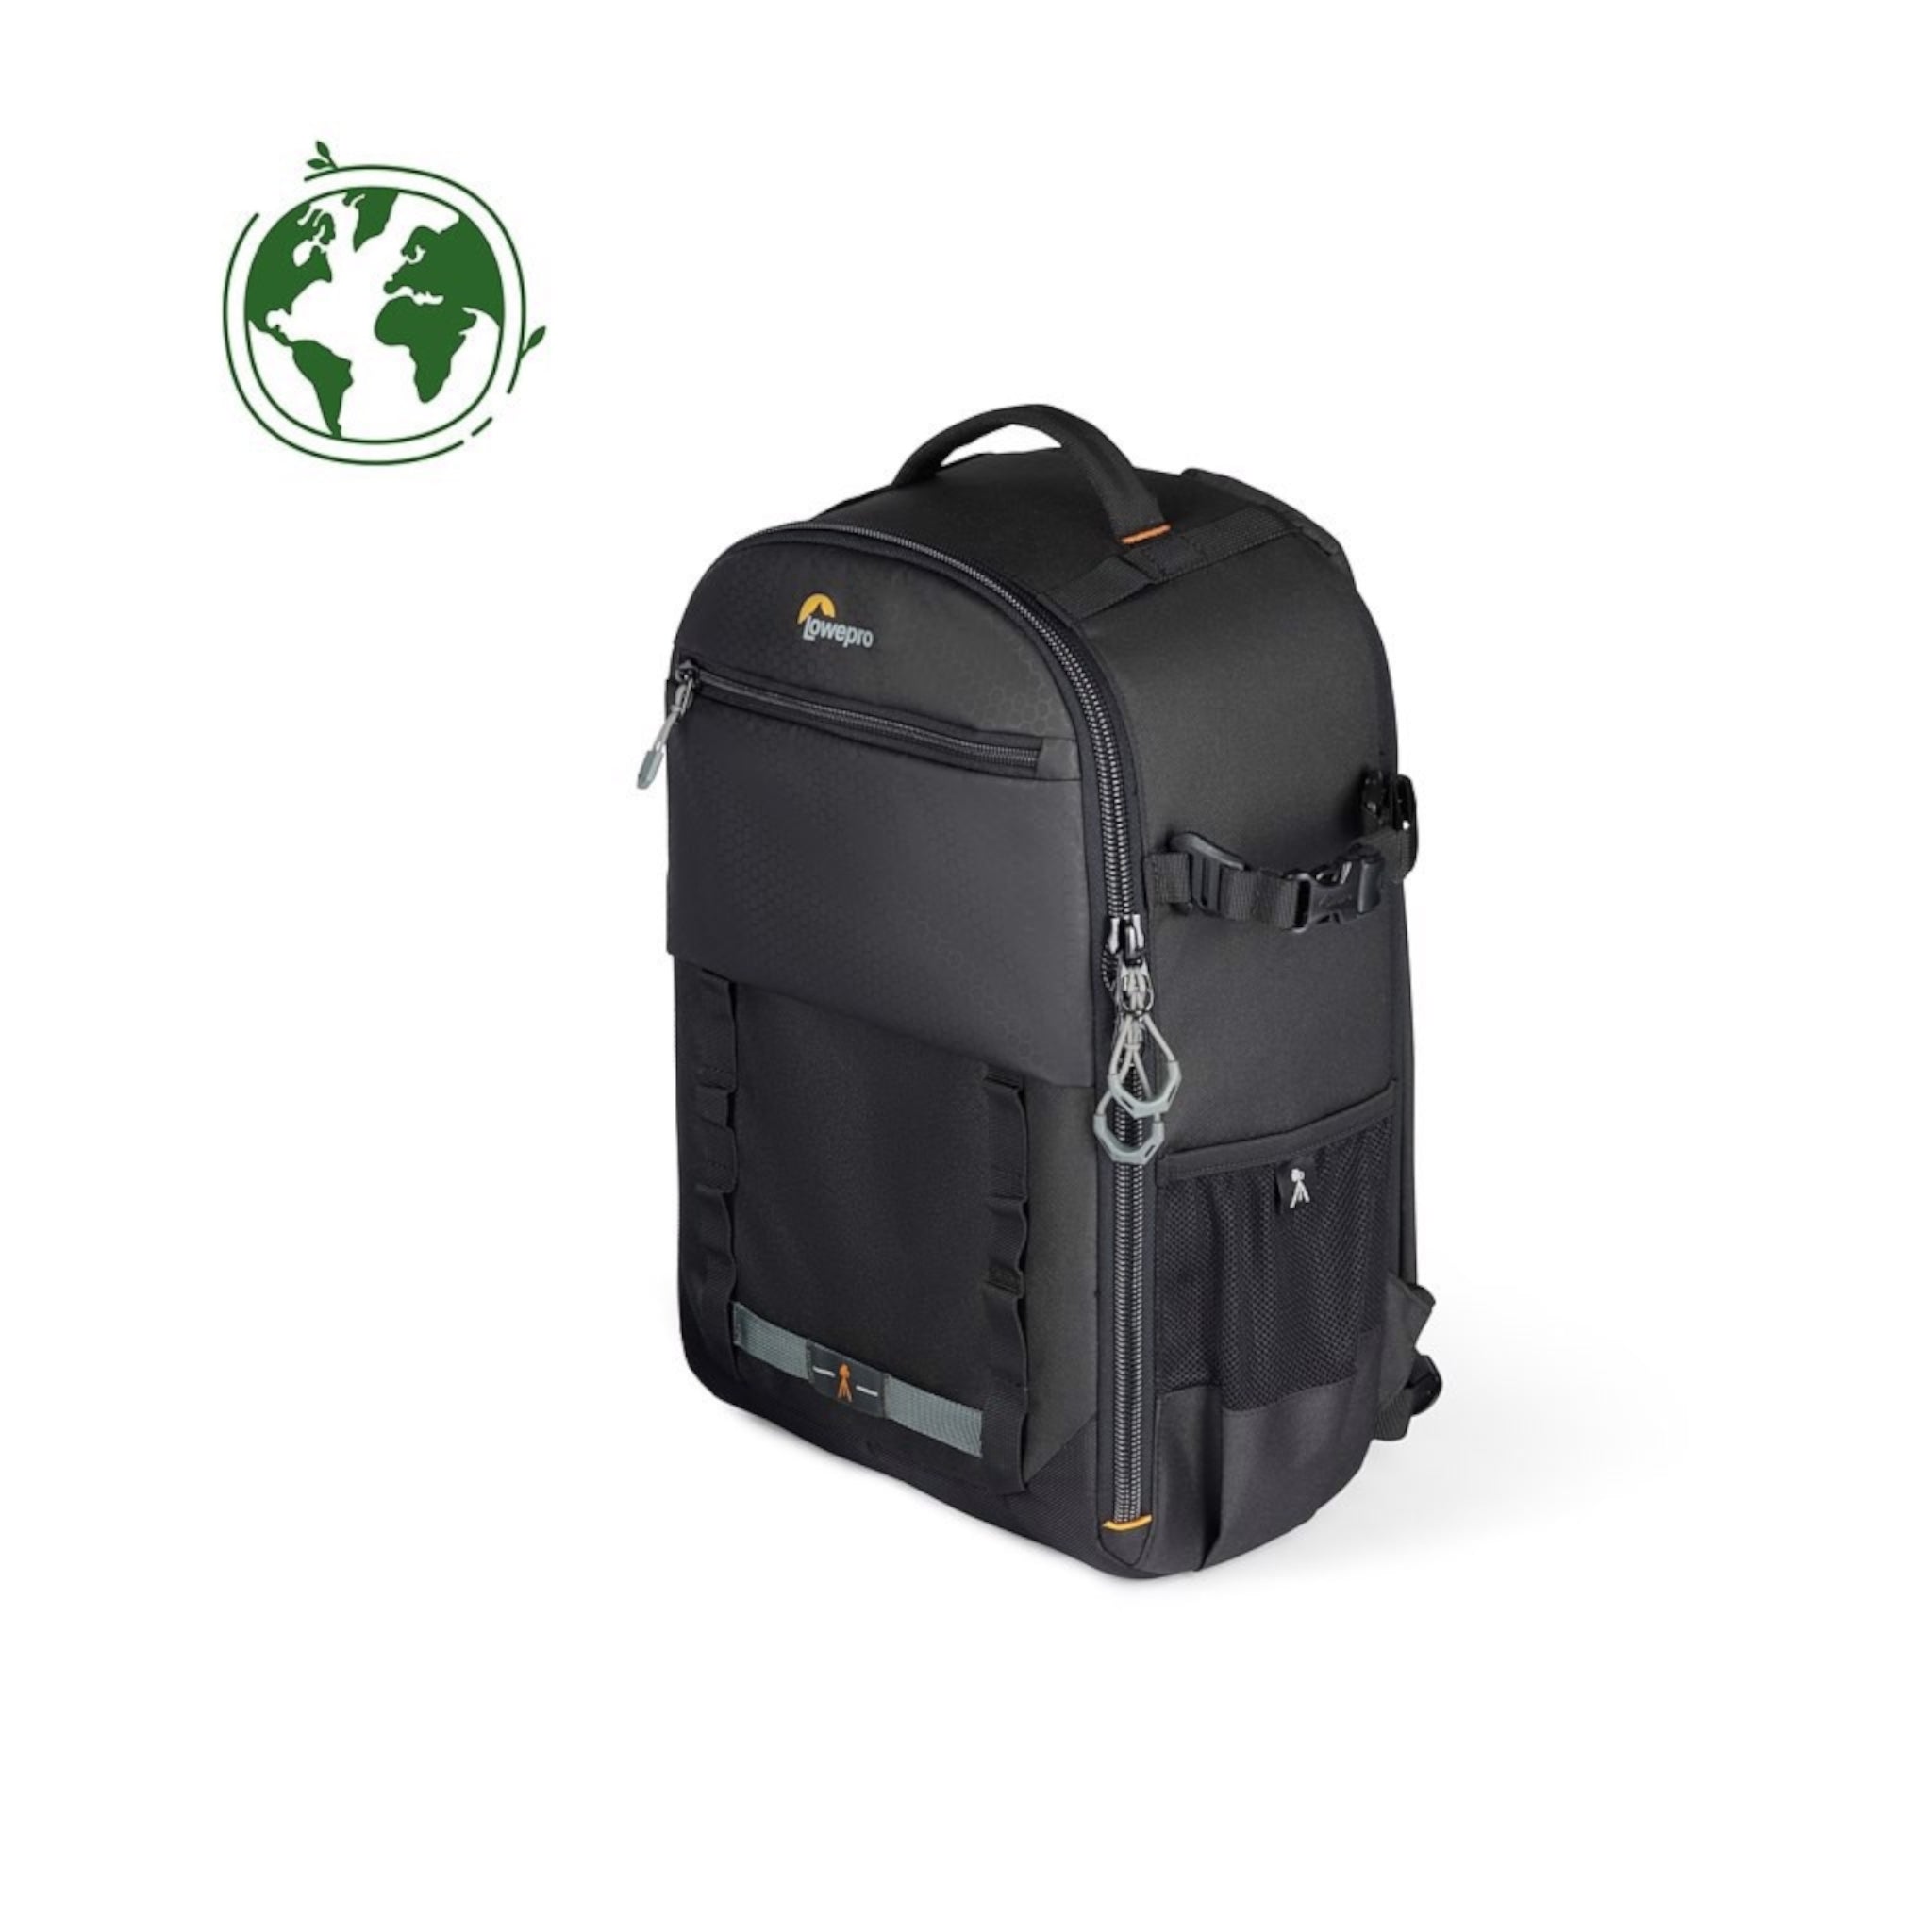 Lowepro Backpack BP 300 III Adventura (Black)